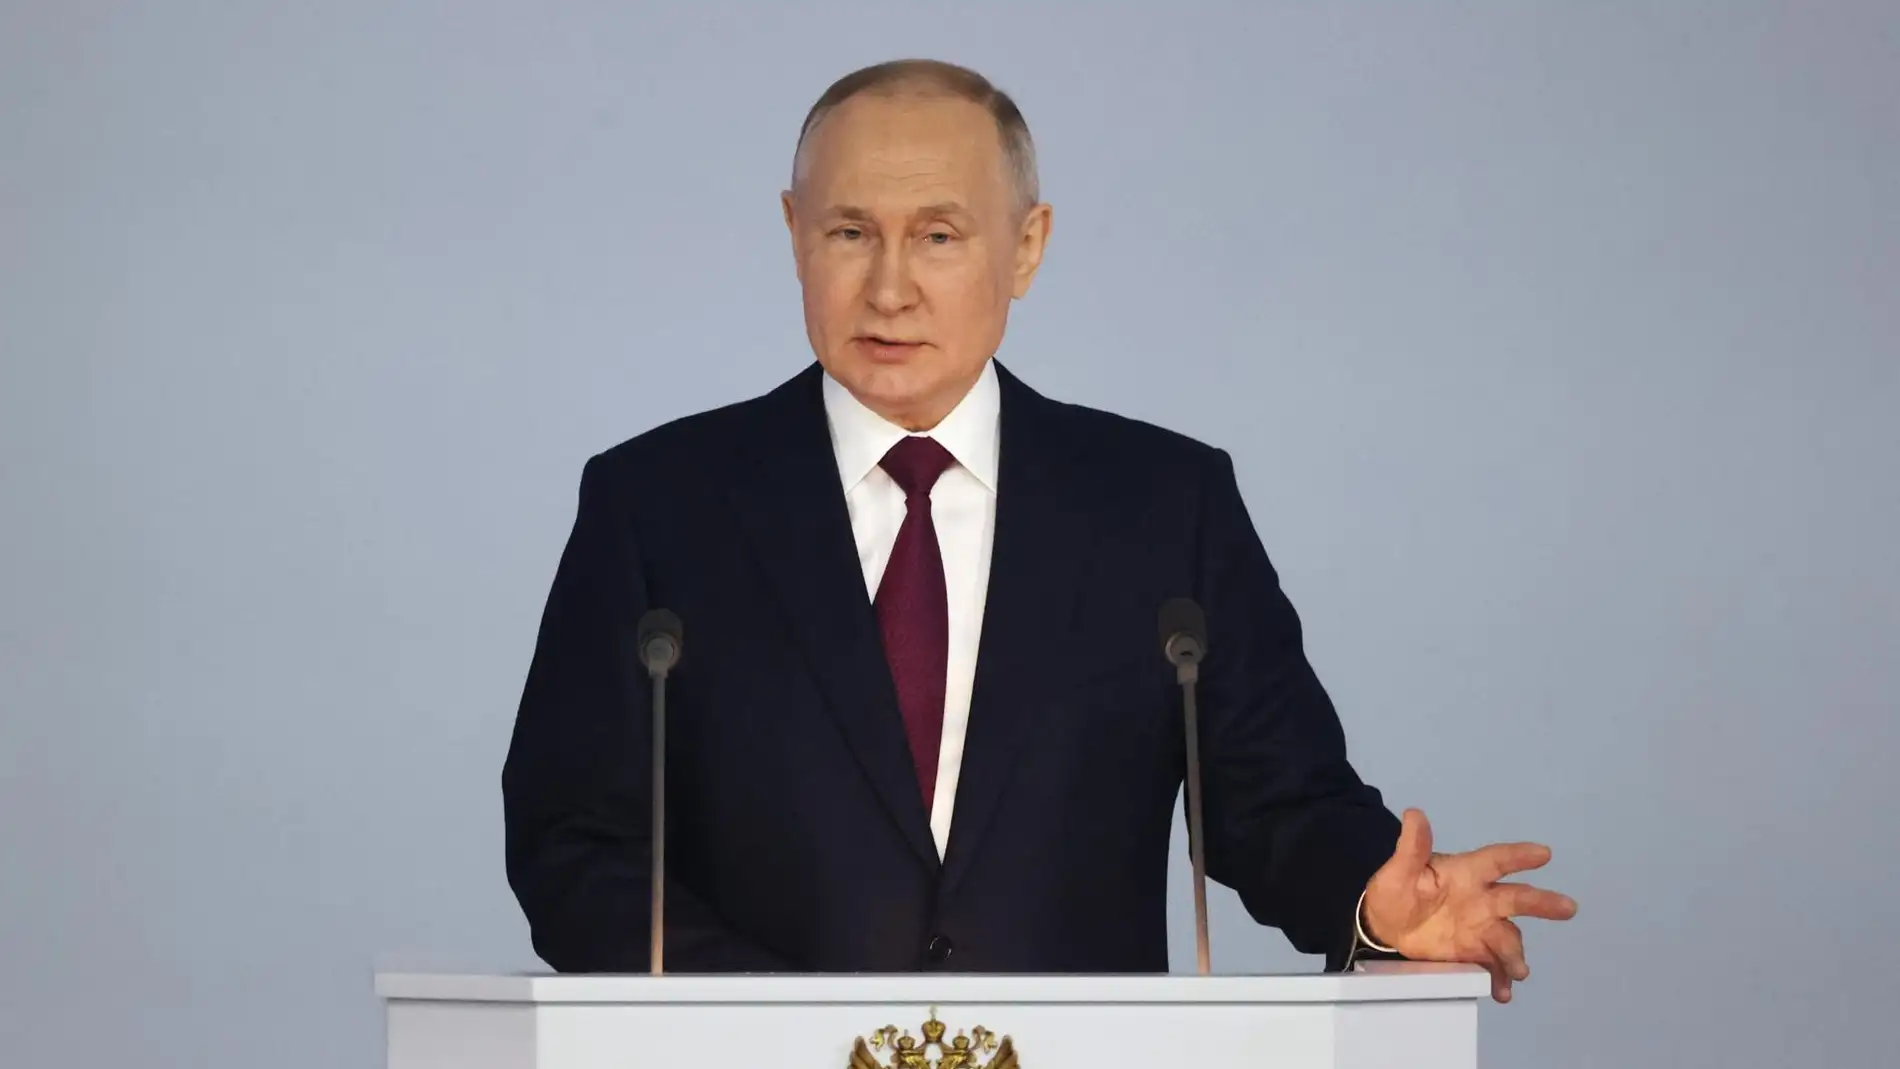 El presidente de Rusia, Vladimir Putin, pronuncia su discurso anual ante la Asamblea Federal en el centro de conferencias Gostiny Dvor de Moscú, Rusia